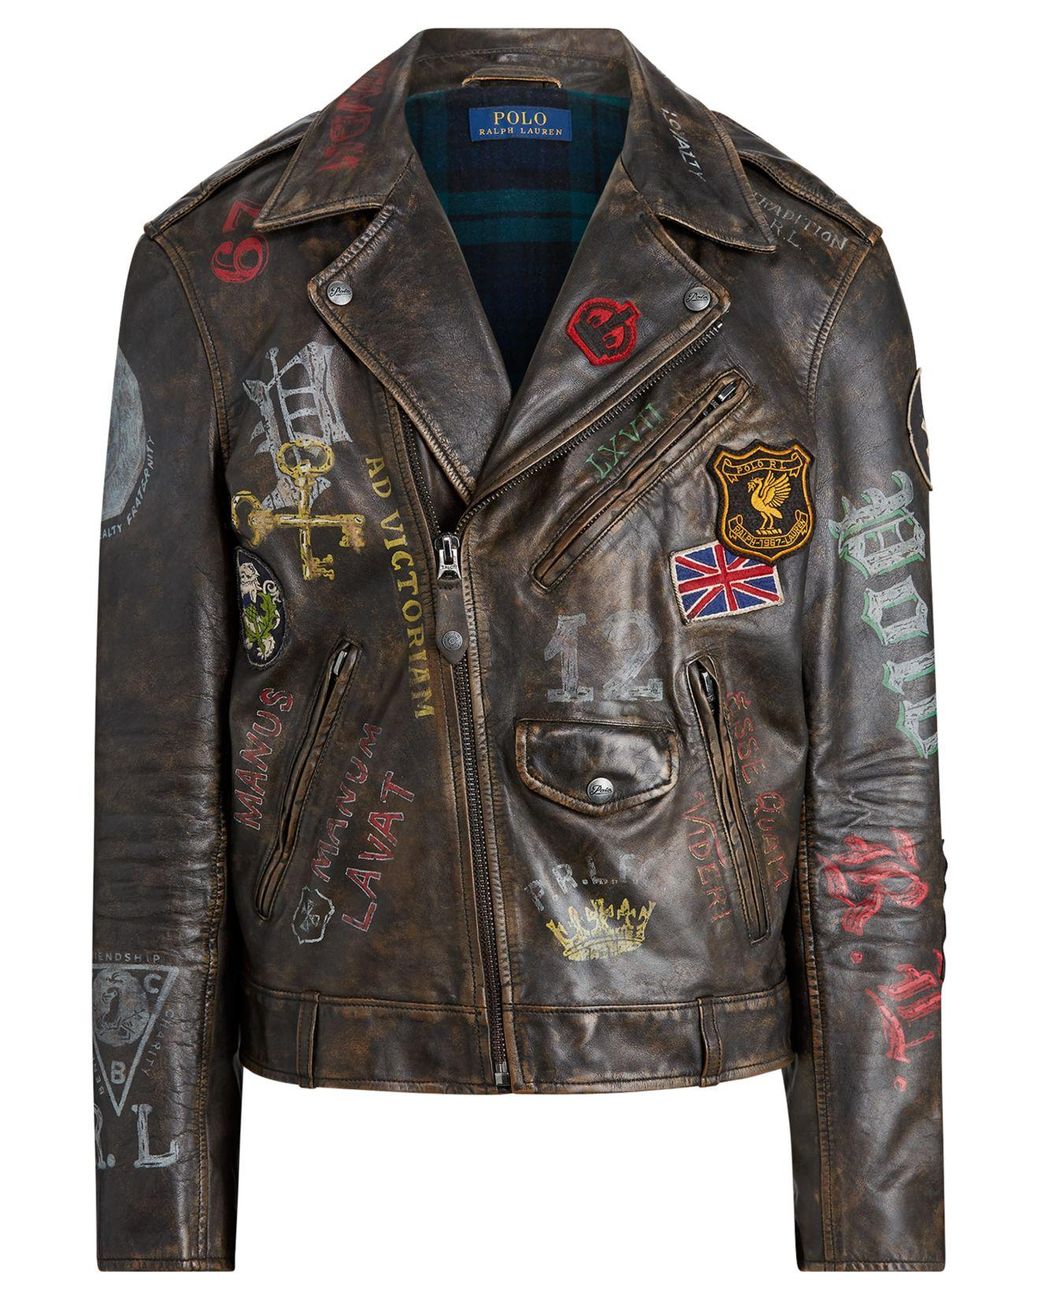 売れ筋がひ新作！ Ralph Lauren vintage riders jacket www.instantupright.com